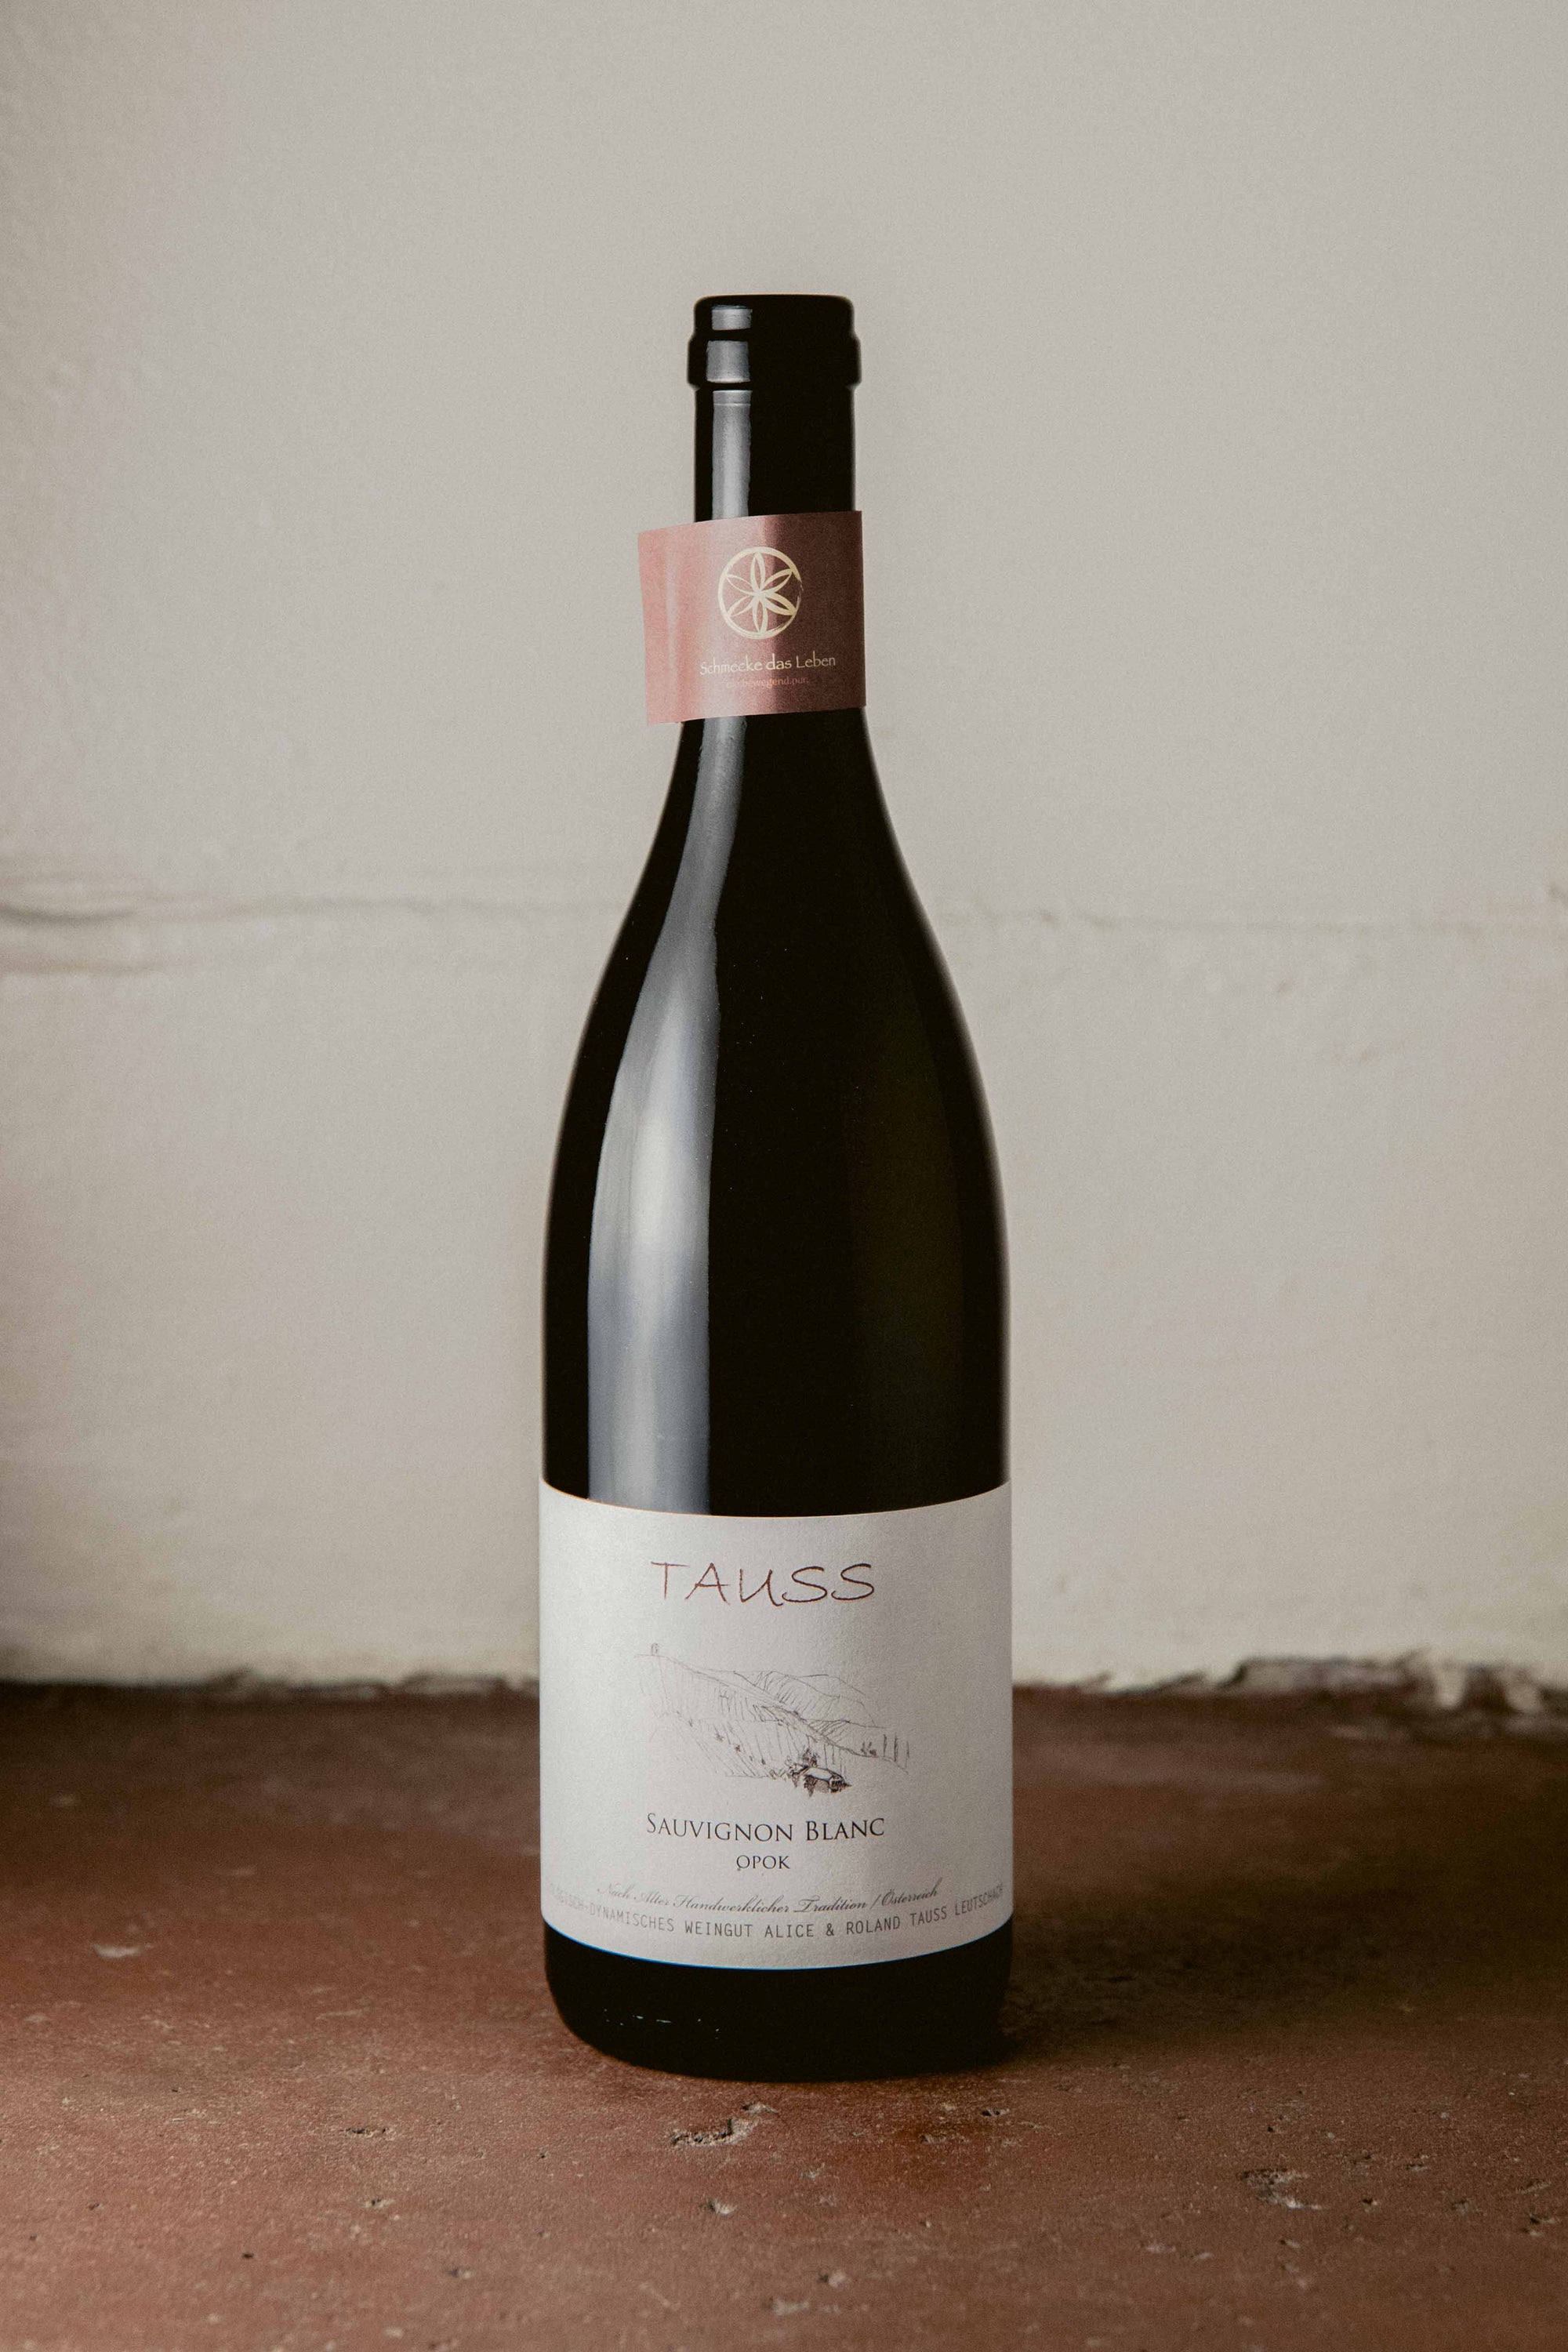 Weingut Tauss Sauvignon Blanc 'Vom Opok' 2020